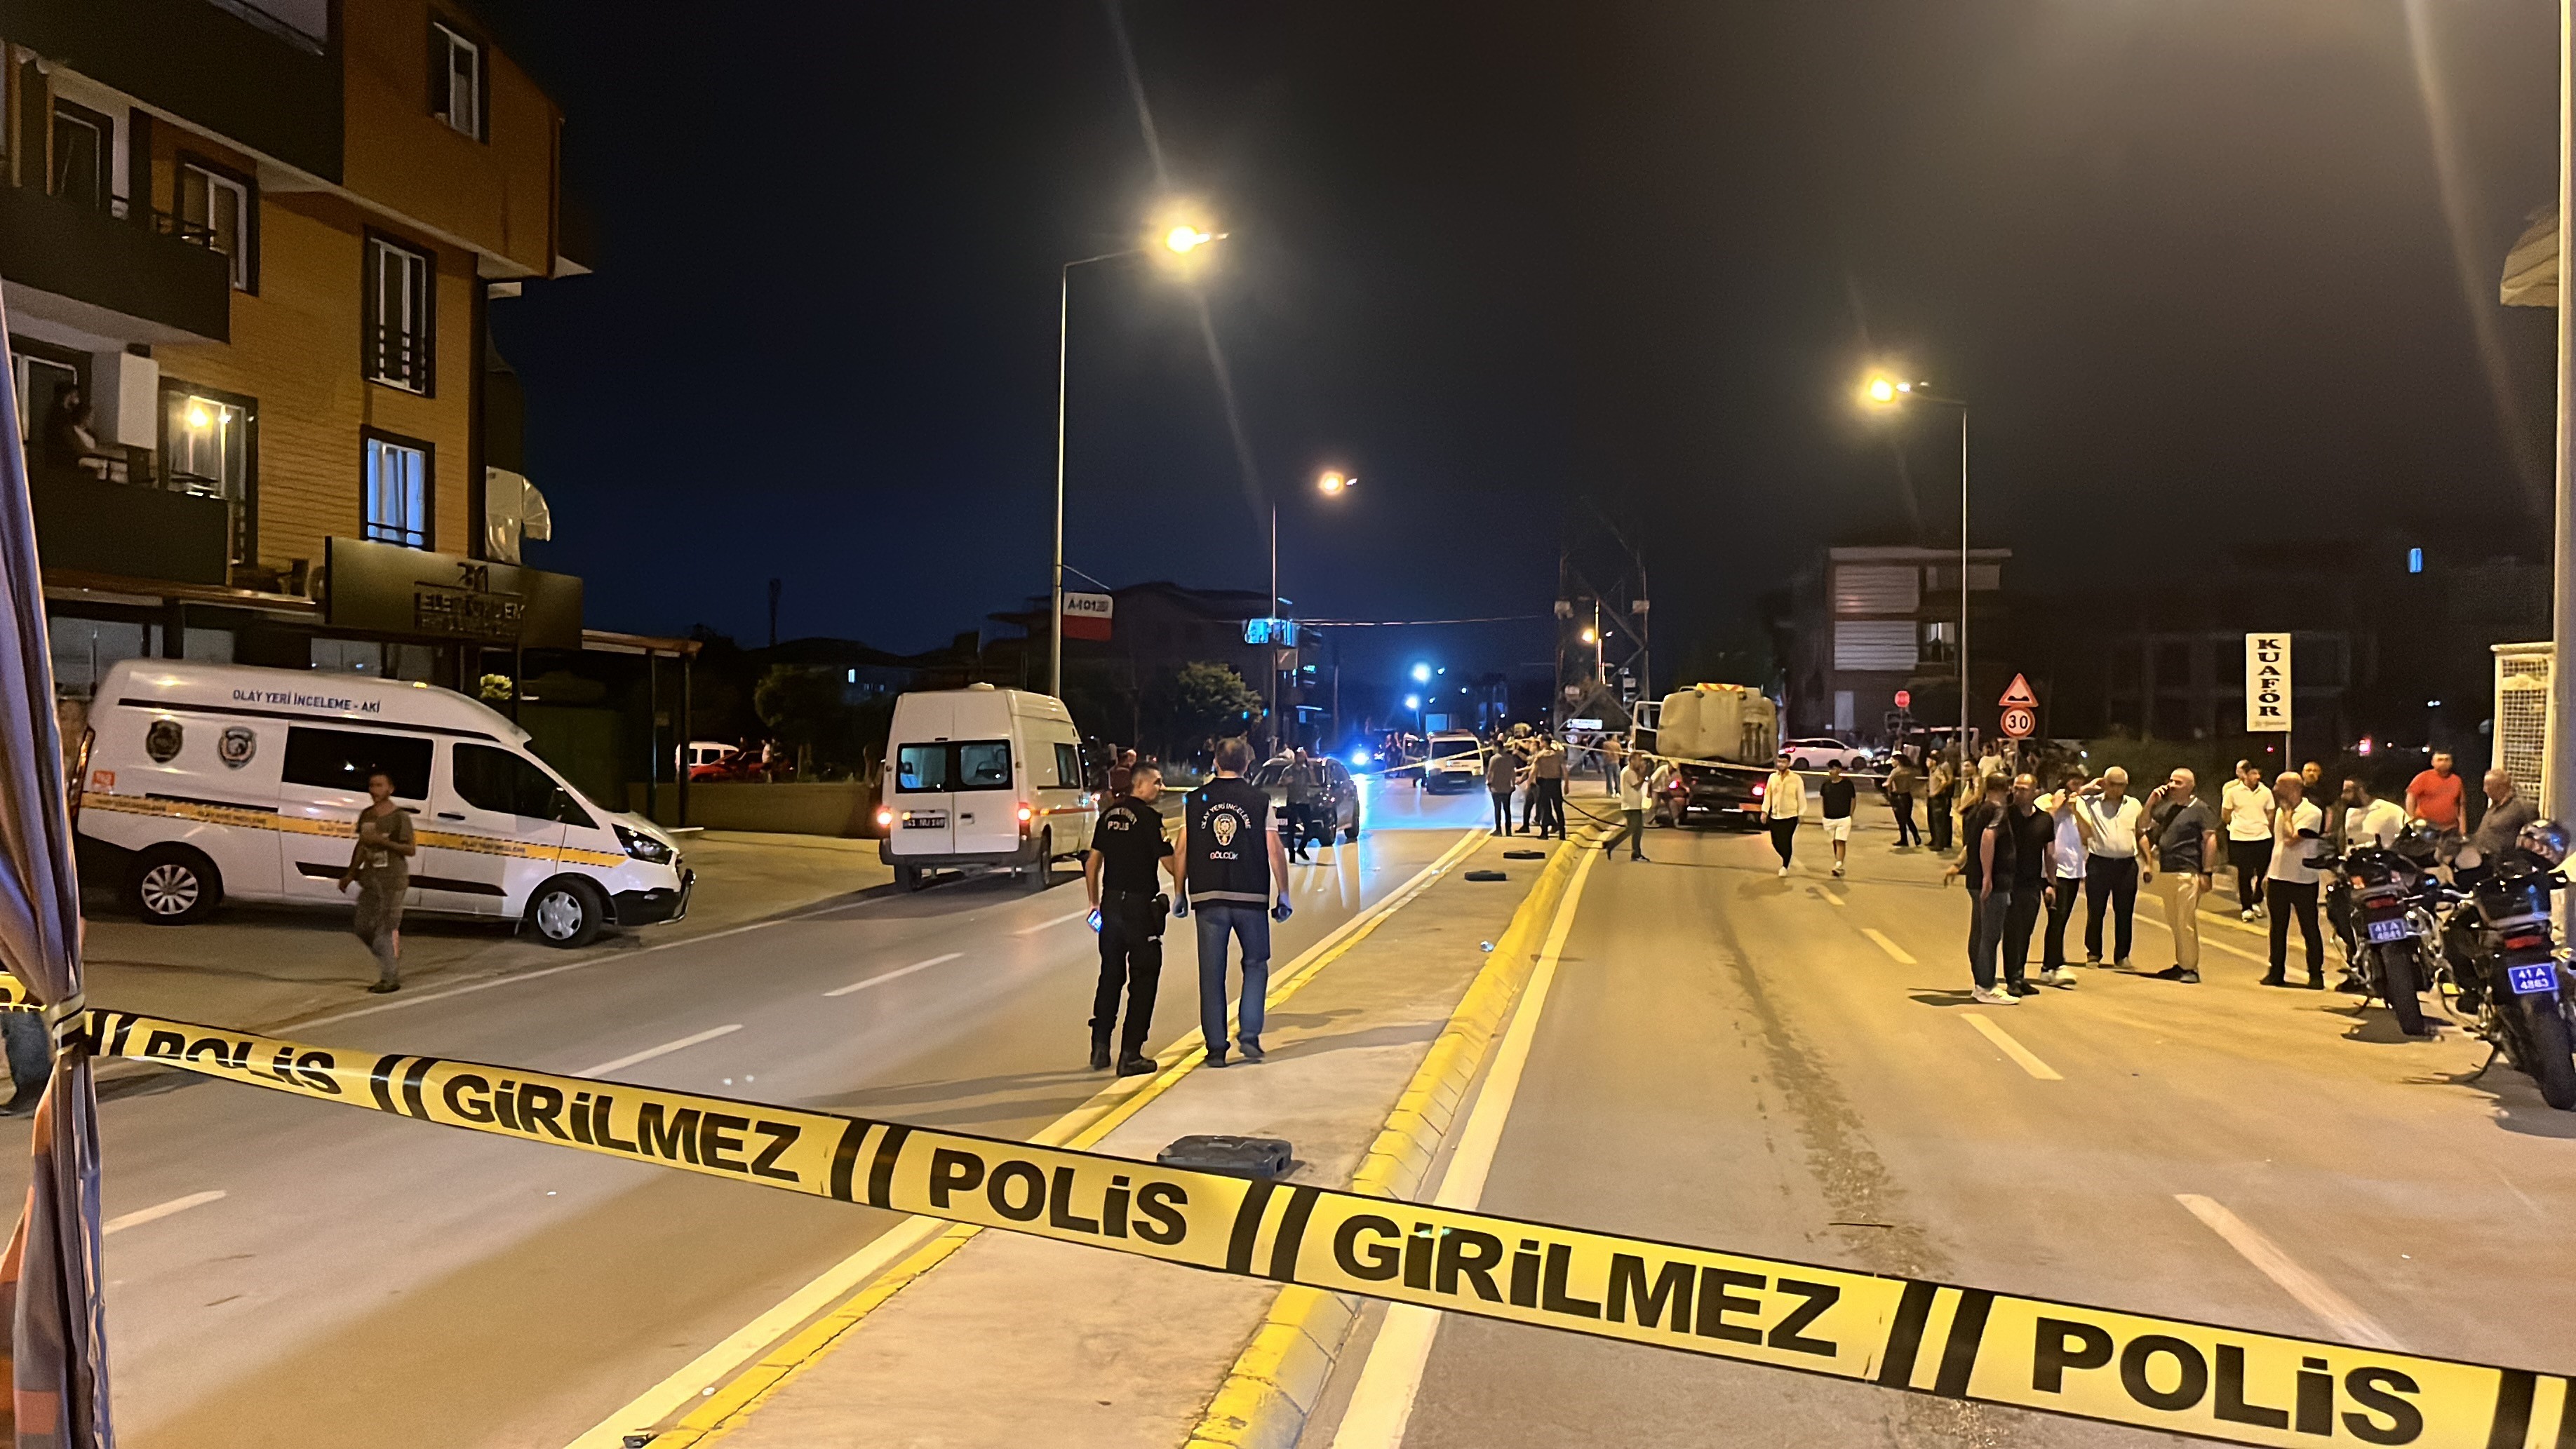 VİDEO - Polisten kaçarken kaza yaptı: 1 ölü, 1 ağır yaralı